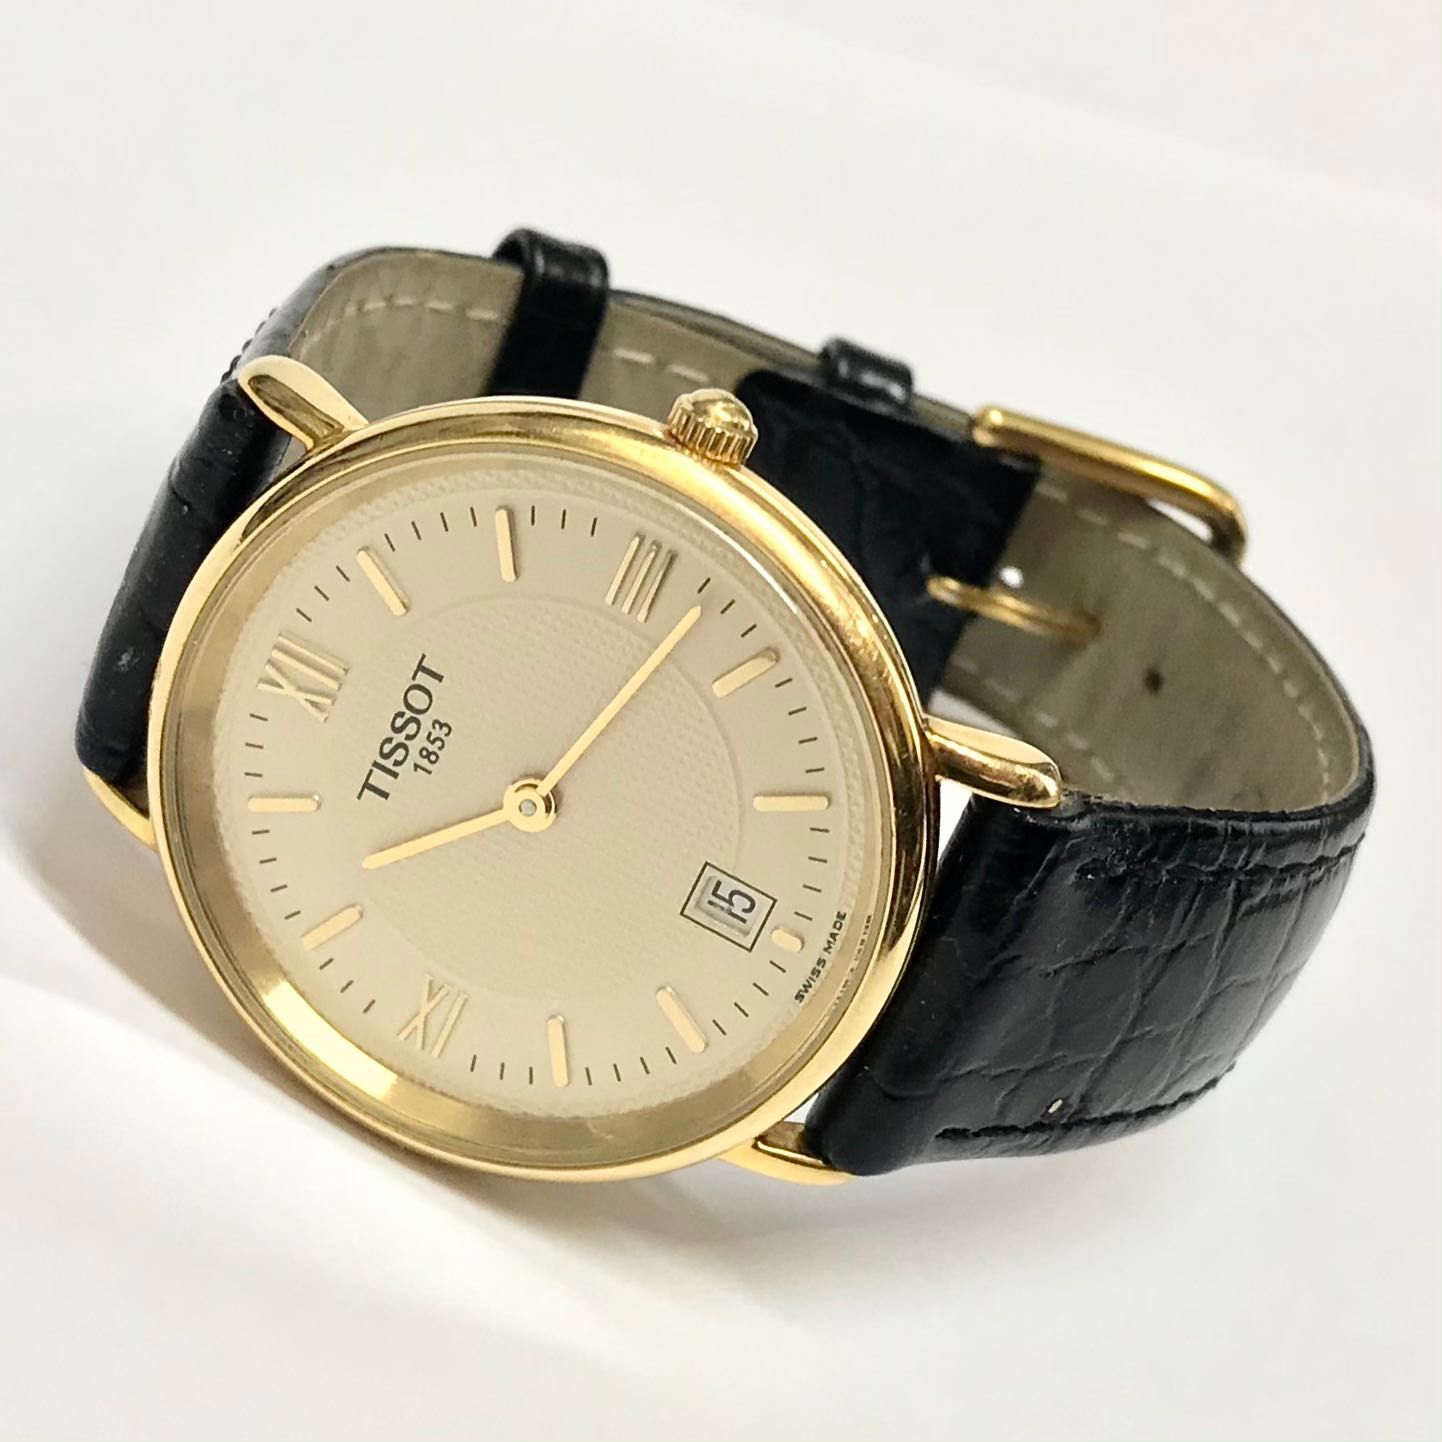 TISSOT T890K szwajcarski zegarek męski na PASKU garniturowy OKAZJA